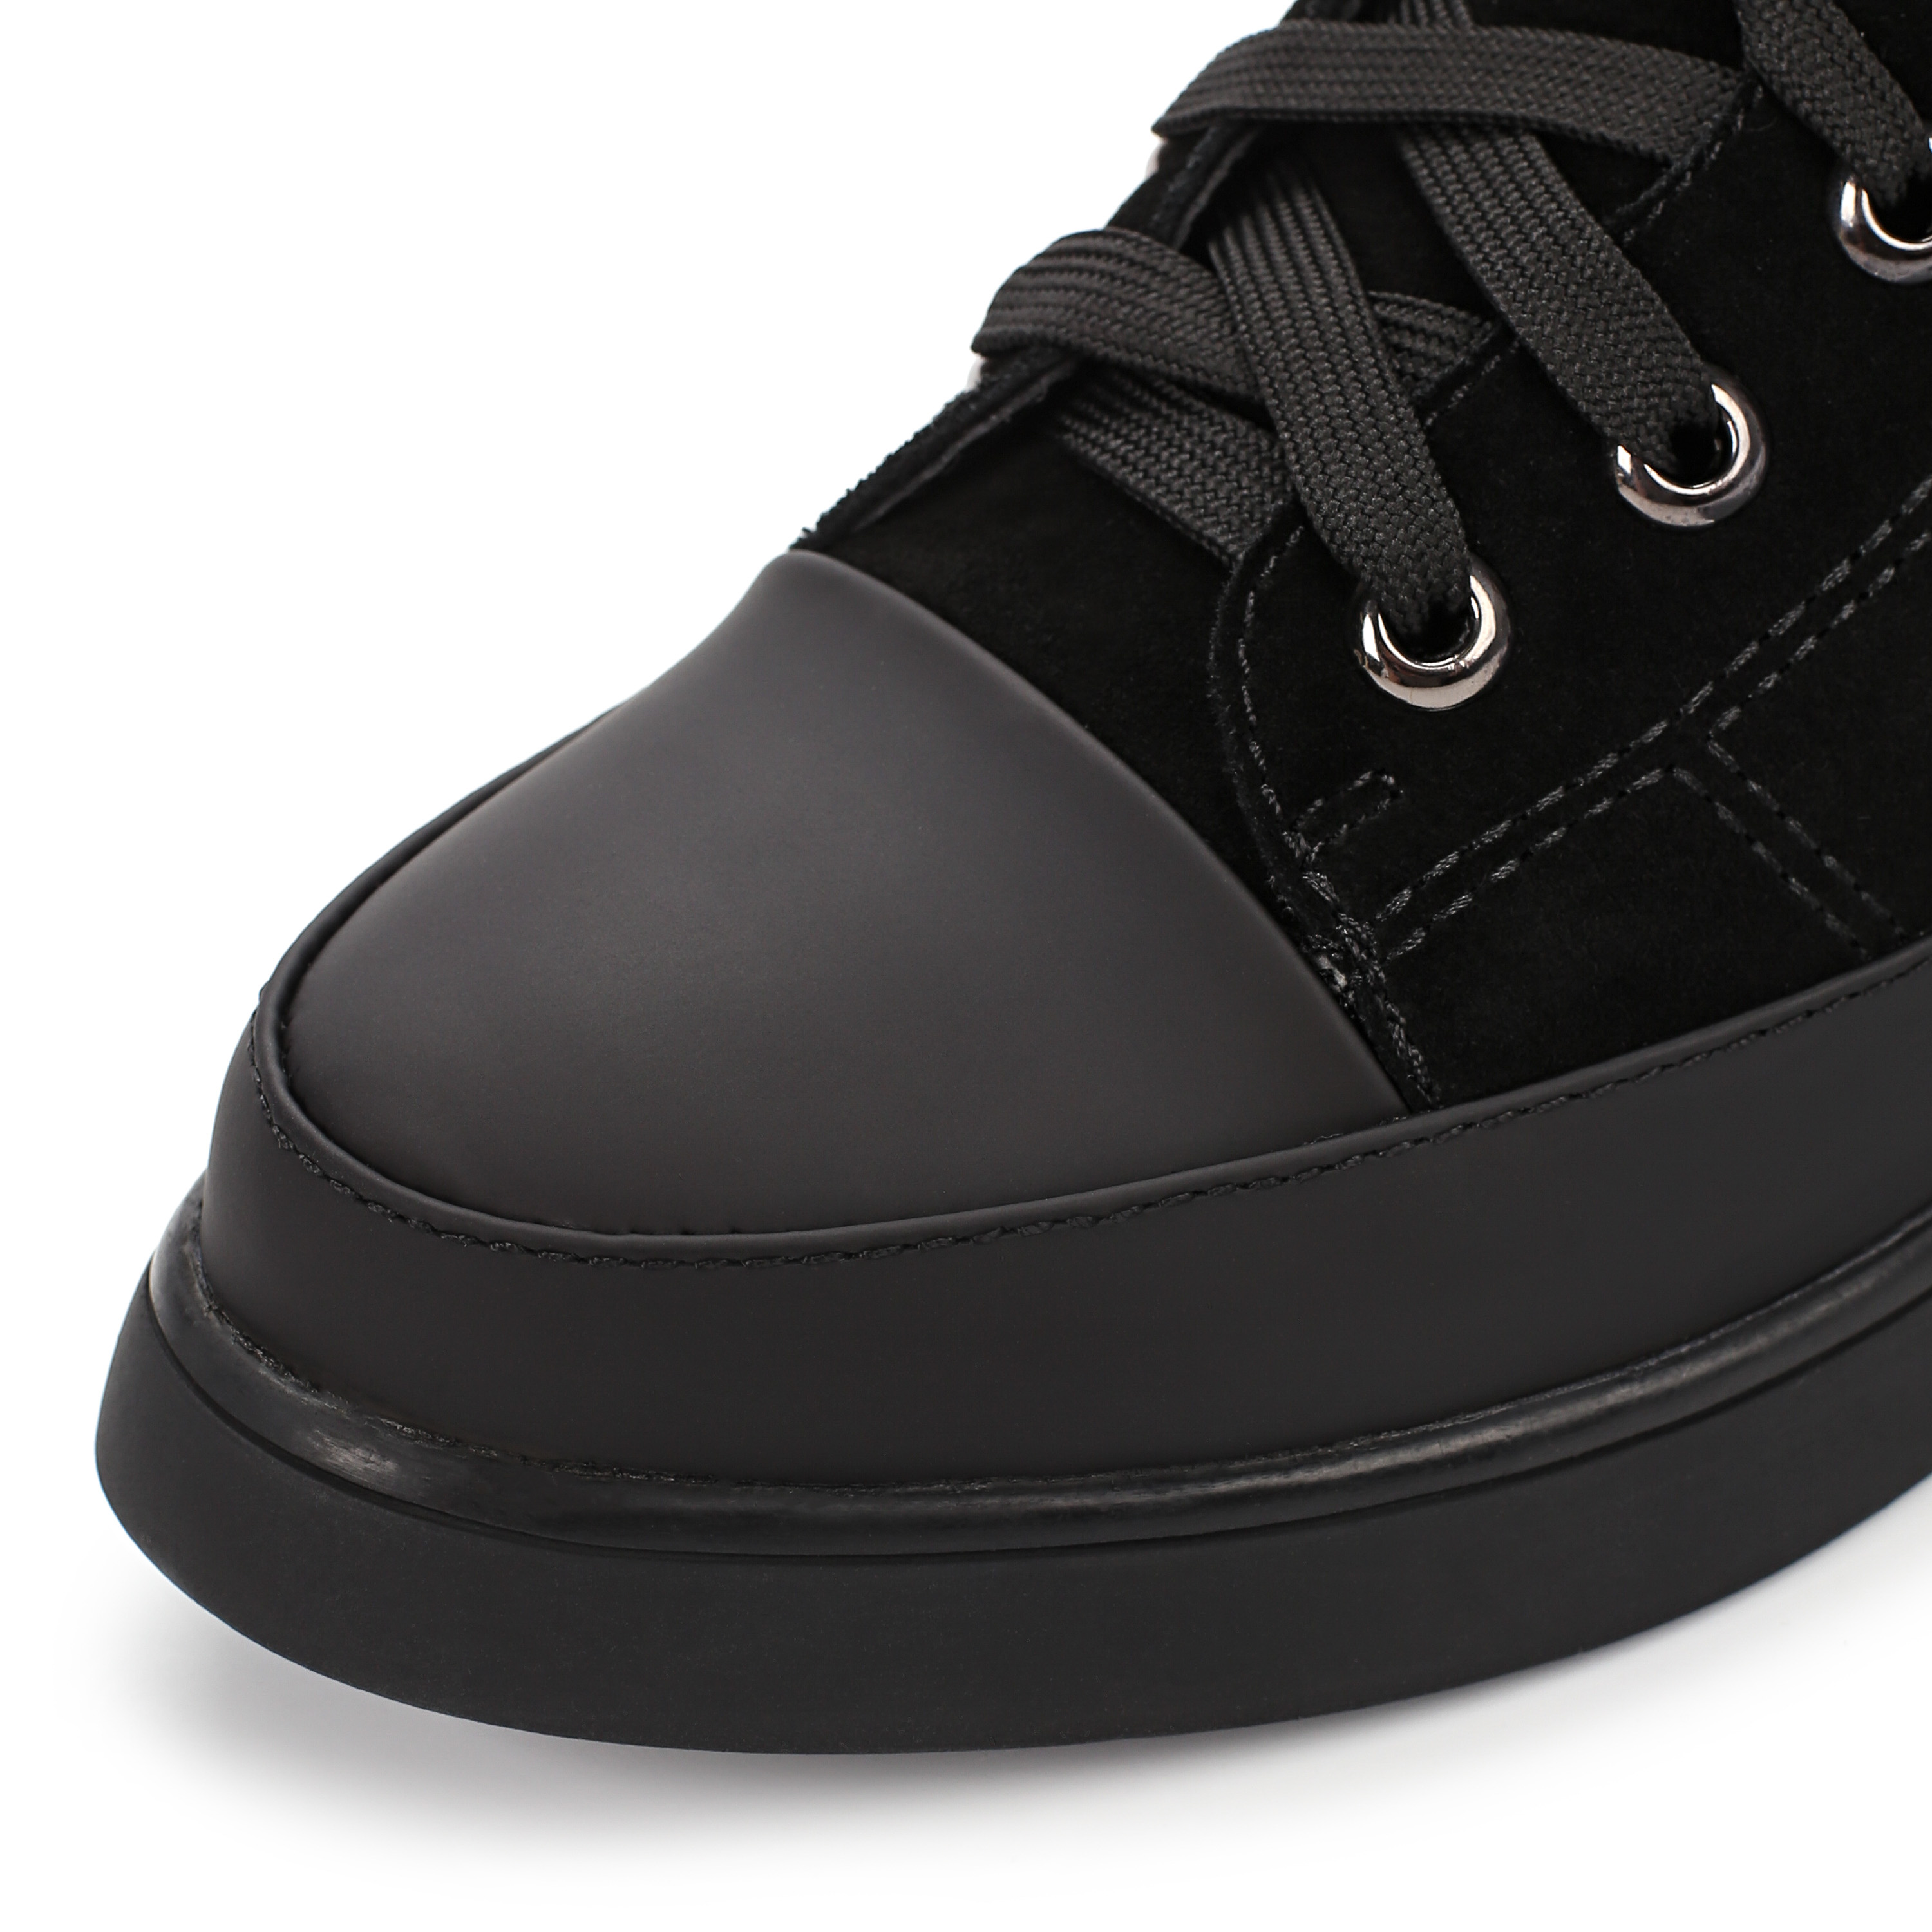 Ботинки Thomas Munz 233-584A-30202 233-584A-30202, цвет черный, размер 38 ботинки актив - фото 6